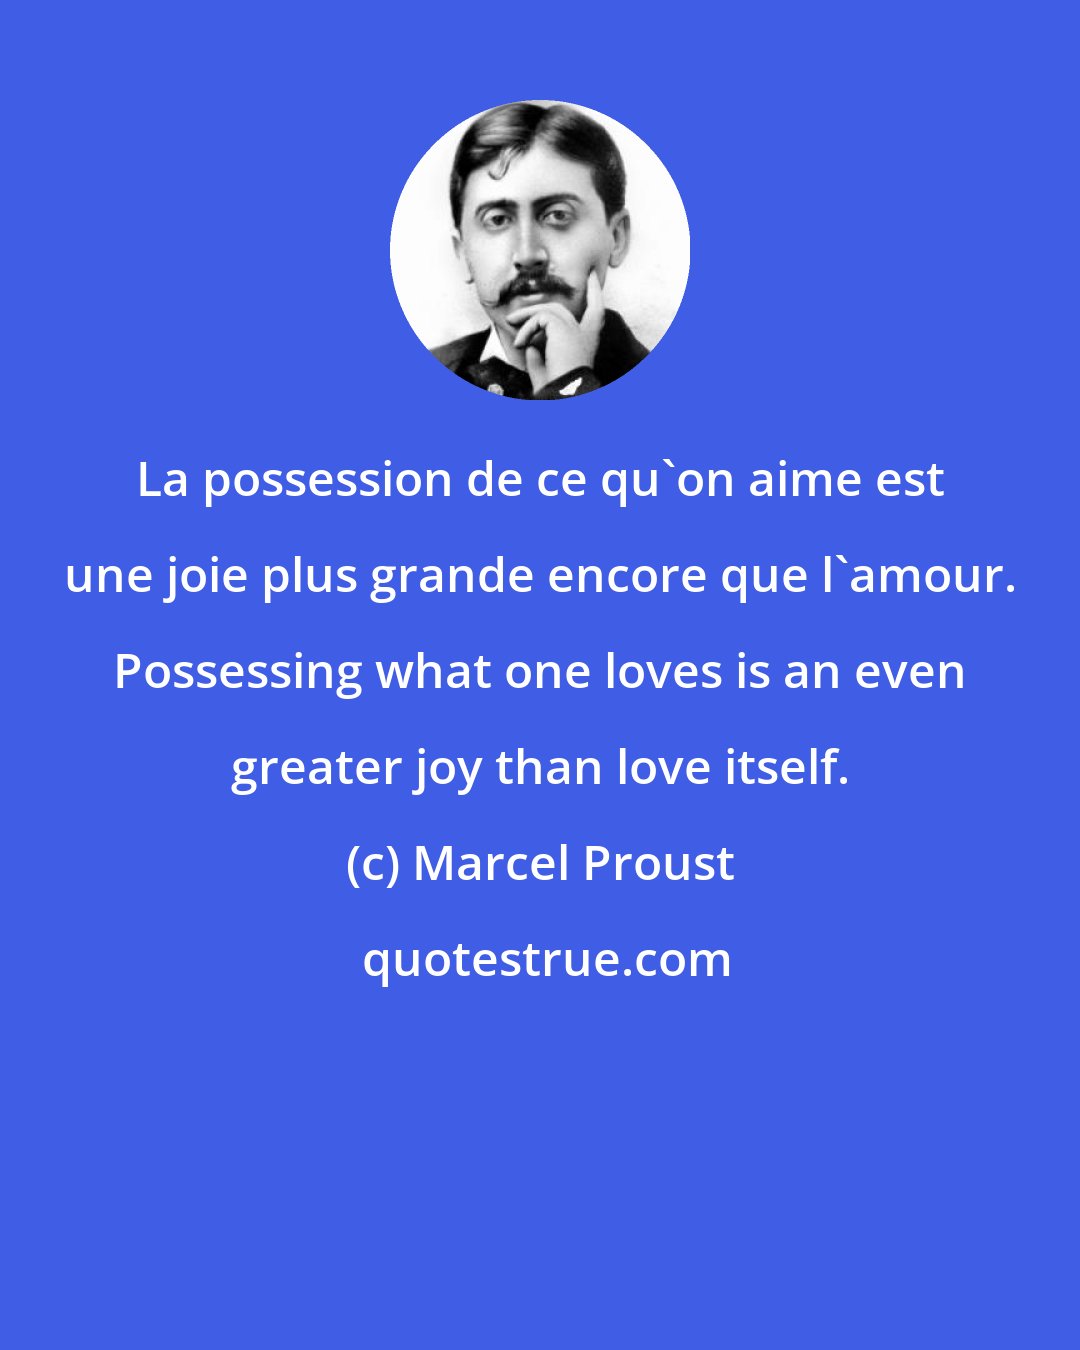 Marcel Proust: La possession de ce qu'on aime est une joie plus grande encore que l'amour. Possessing what one loves is an even greater joy than love itself.